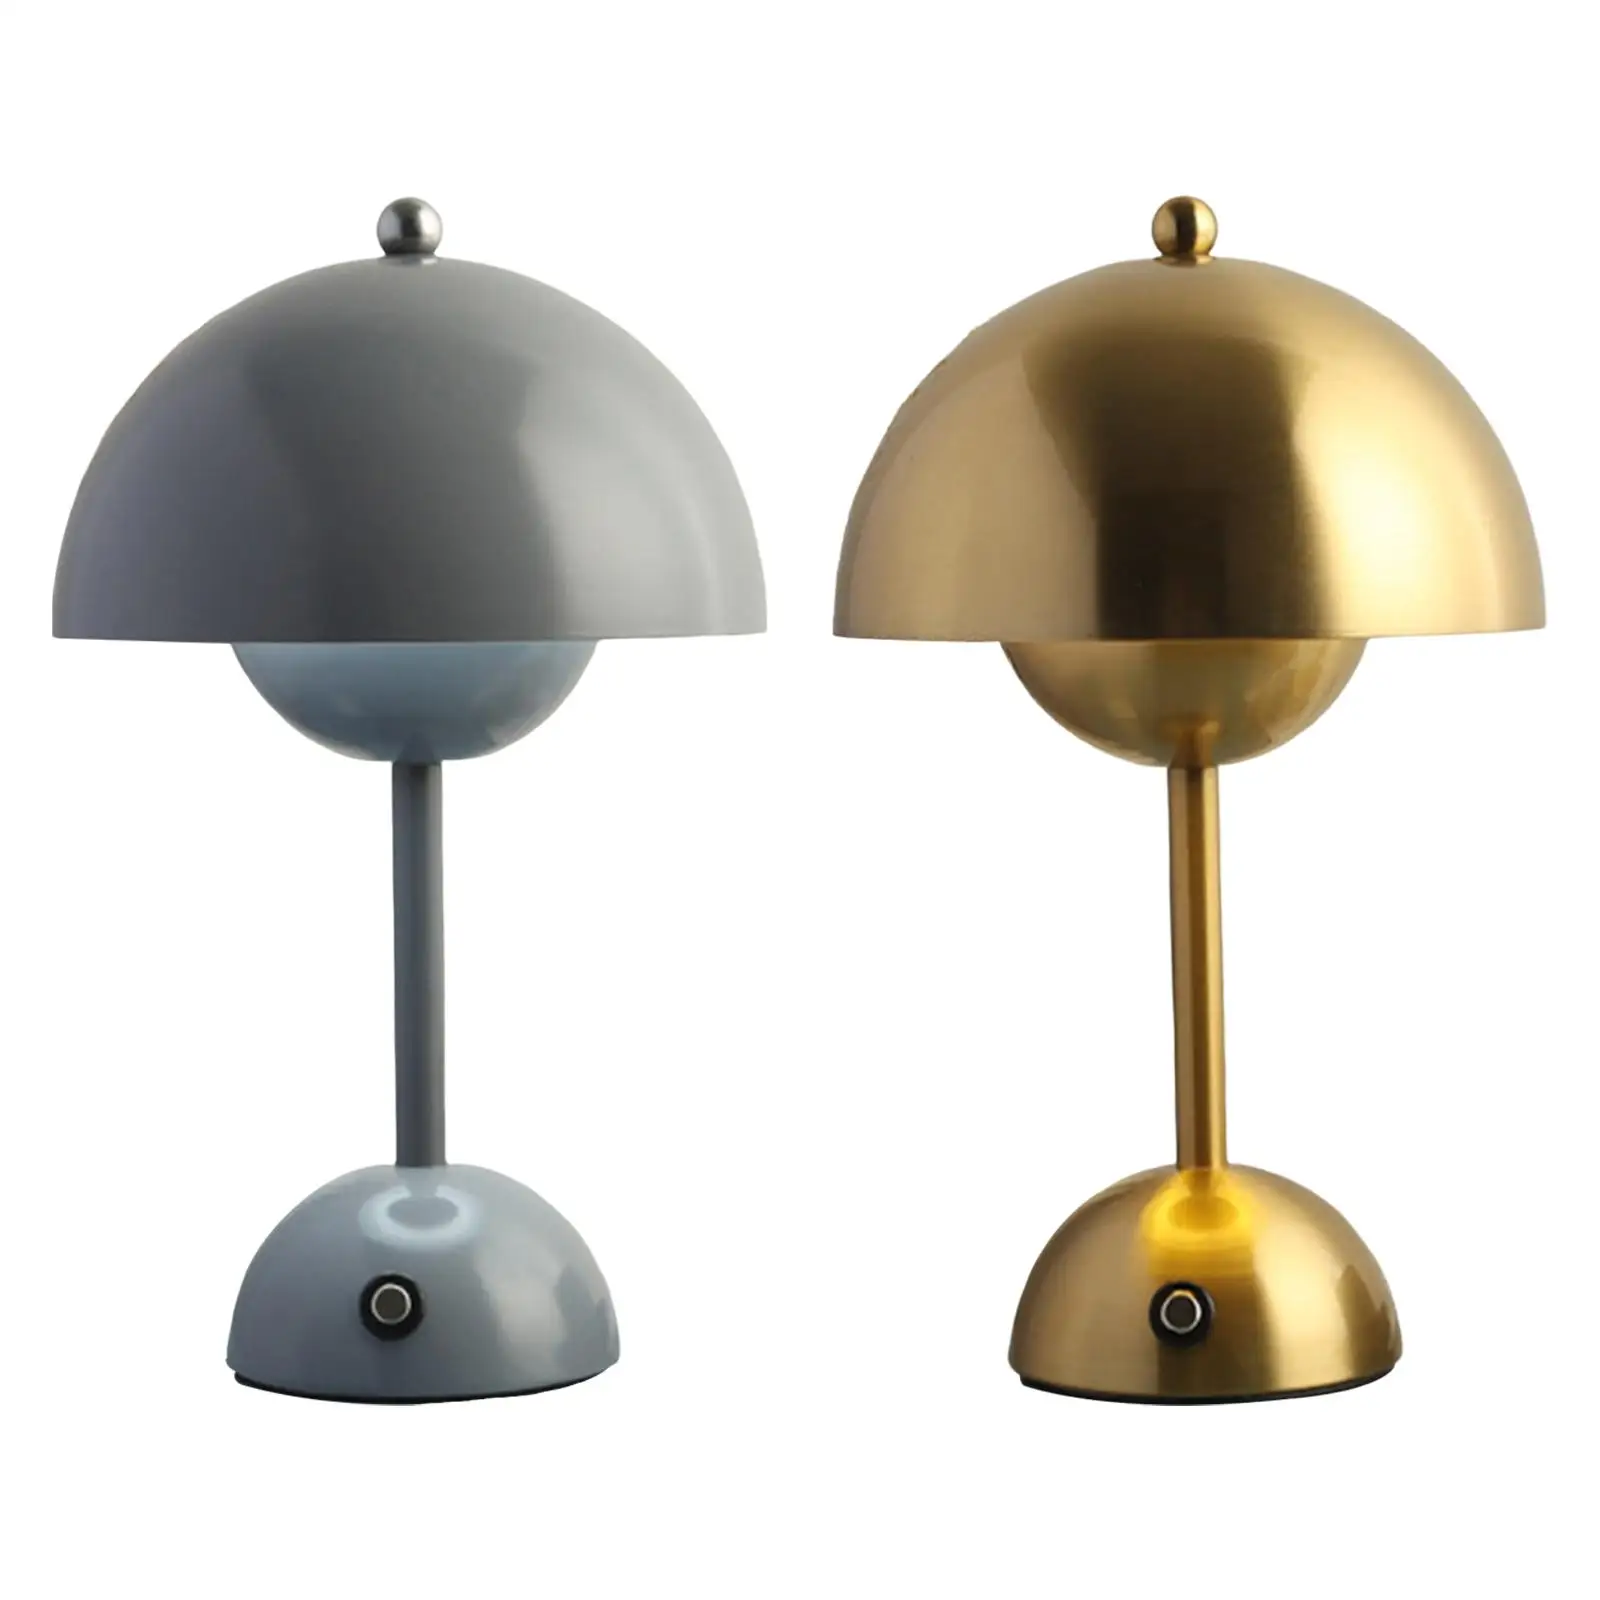 USB Mushroom Bud Lamp Lamp LED Ornament Study for Restaurant Living Room